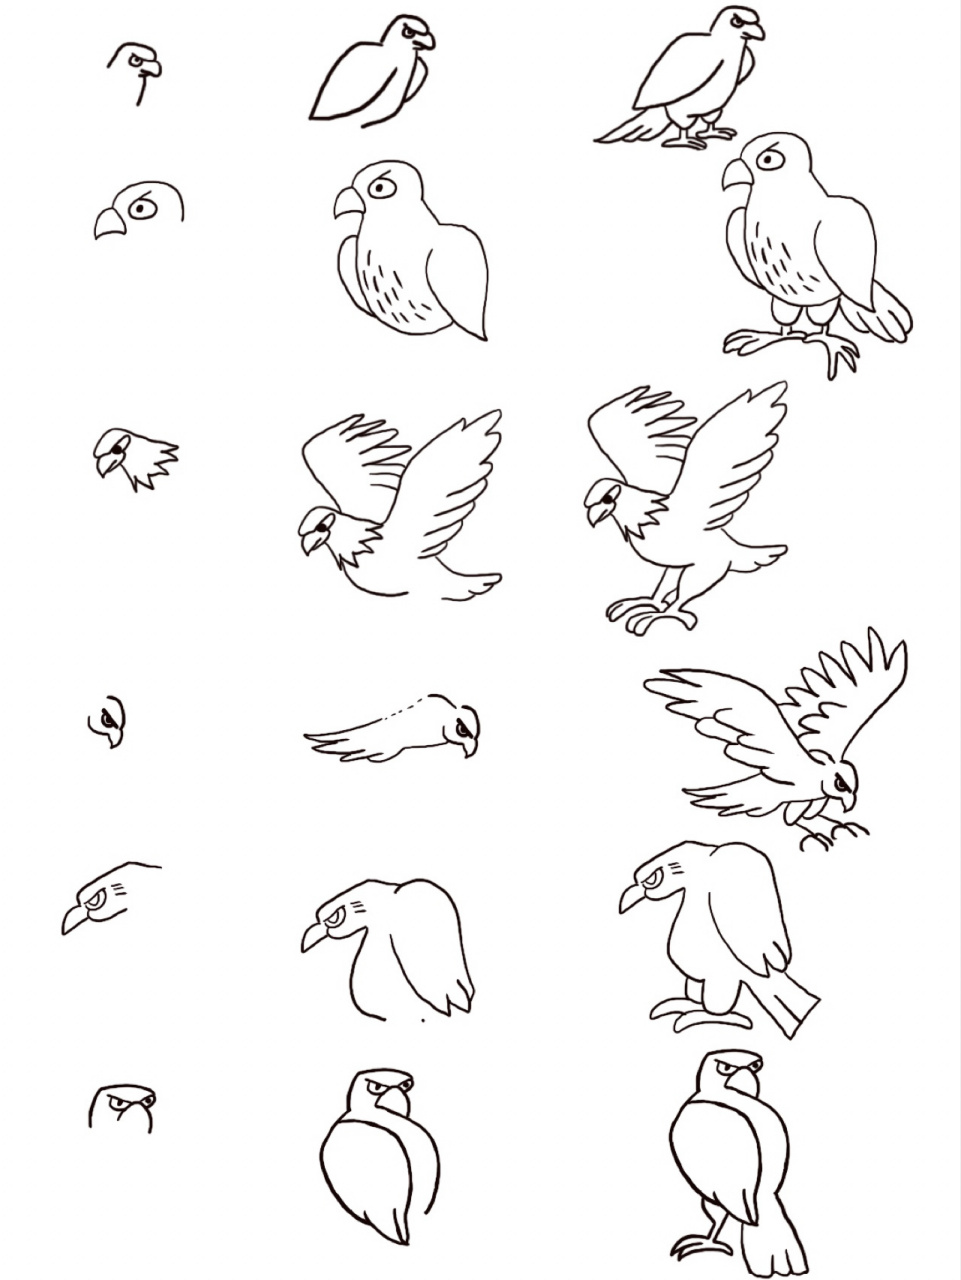 黑白简笔画—鹰 —简笔画练习 —知识普及:鹰是肉食动物,会捕捉老鼠